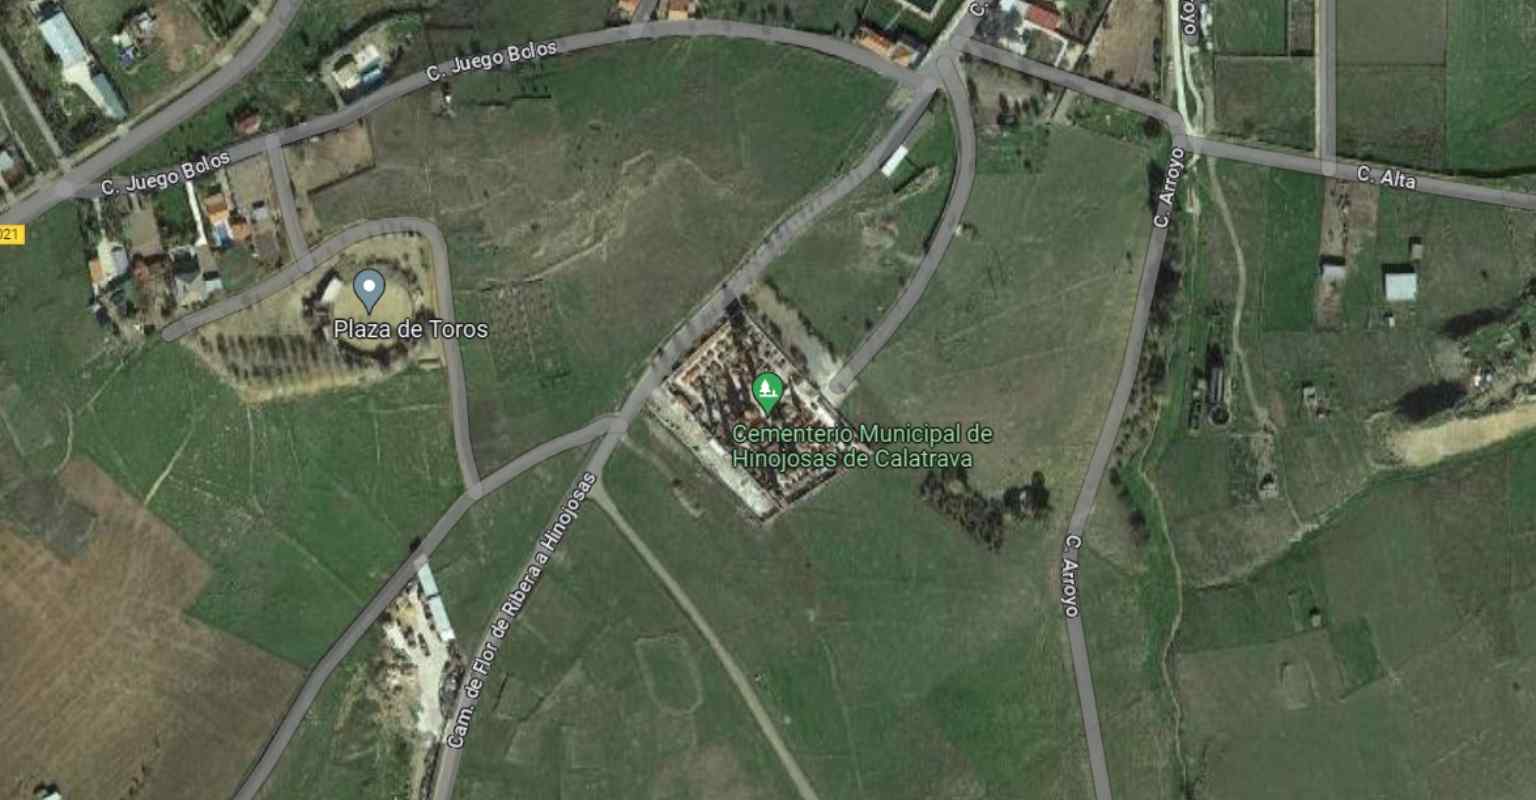 Captura de Google Maps de la zona donde sucedió el accidente